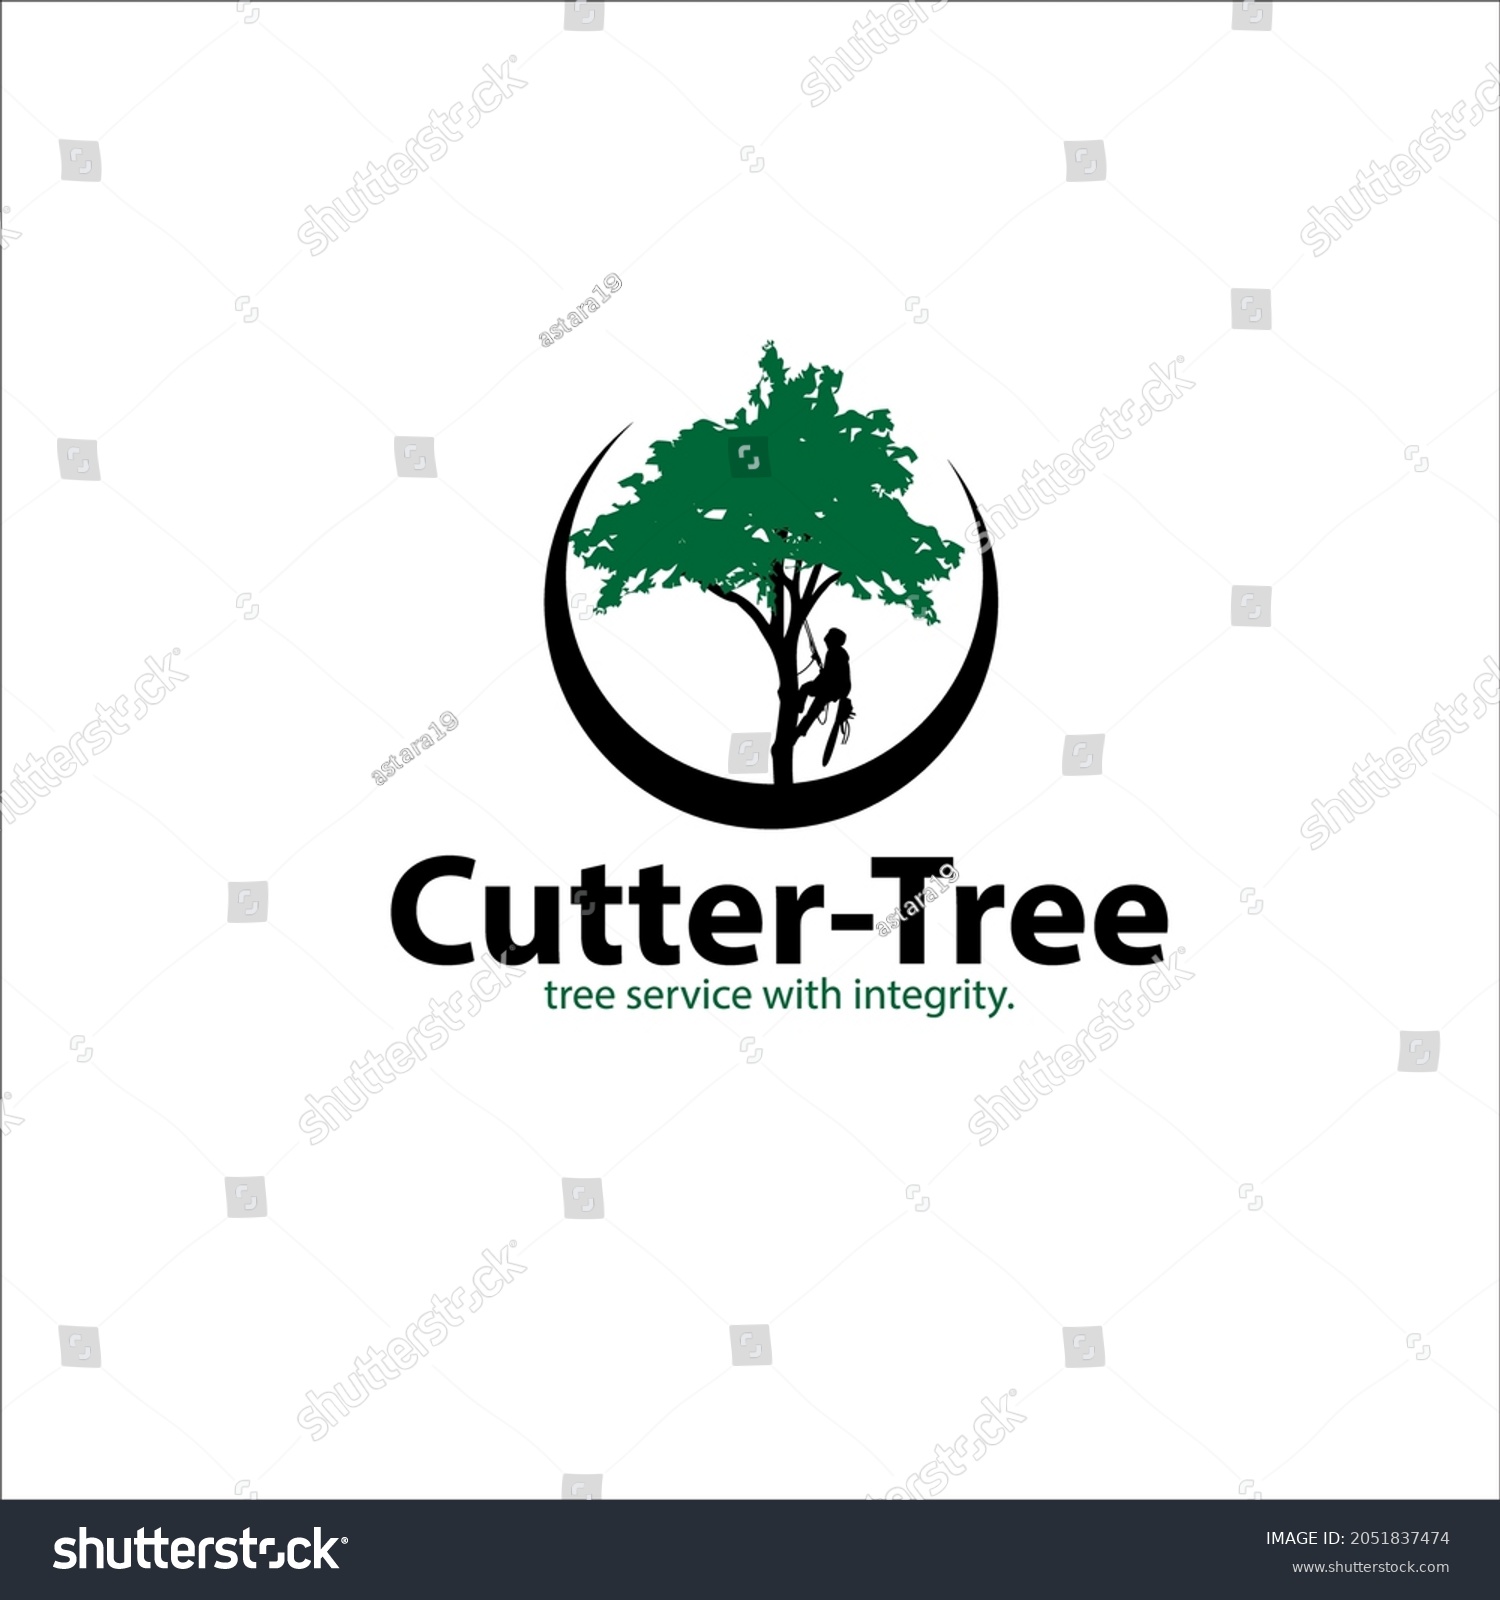 tree service logo ideas 2